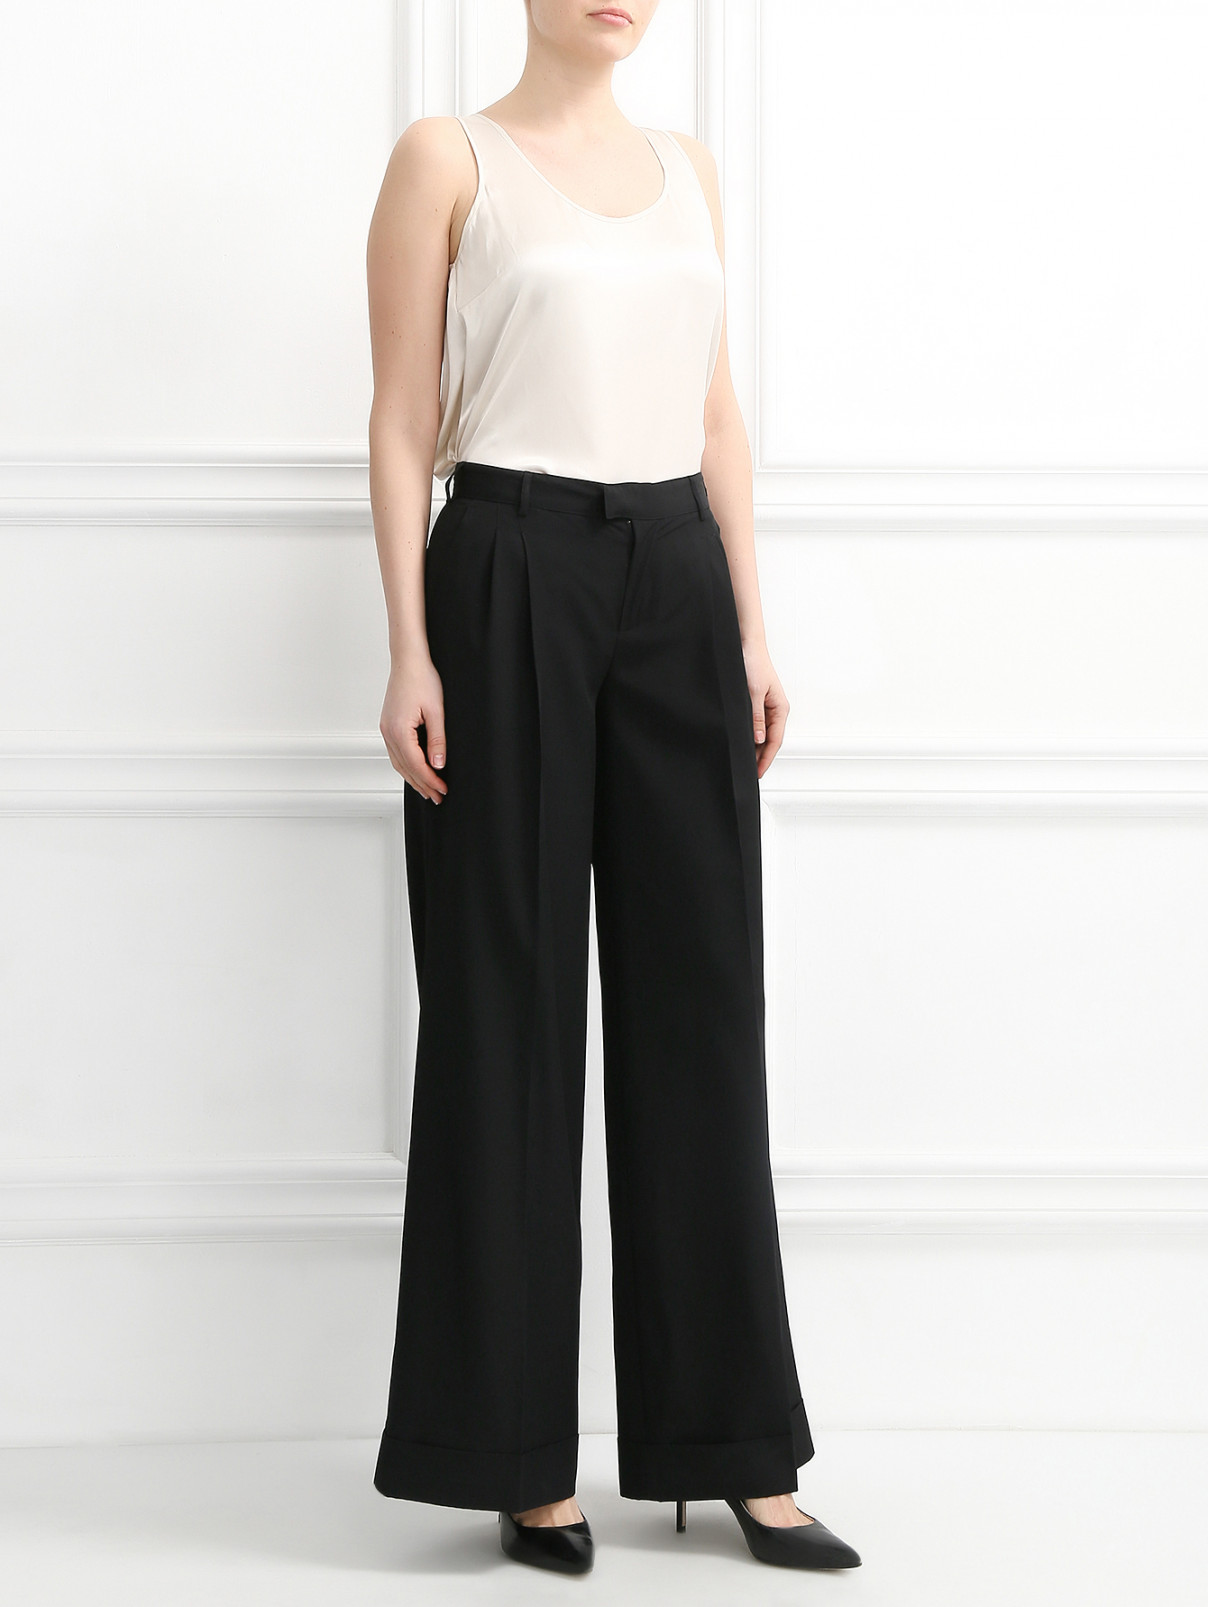 Широкие брюки Jean Paul Gaultier  –  Модель Общий вид  – Цвет:  Черный